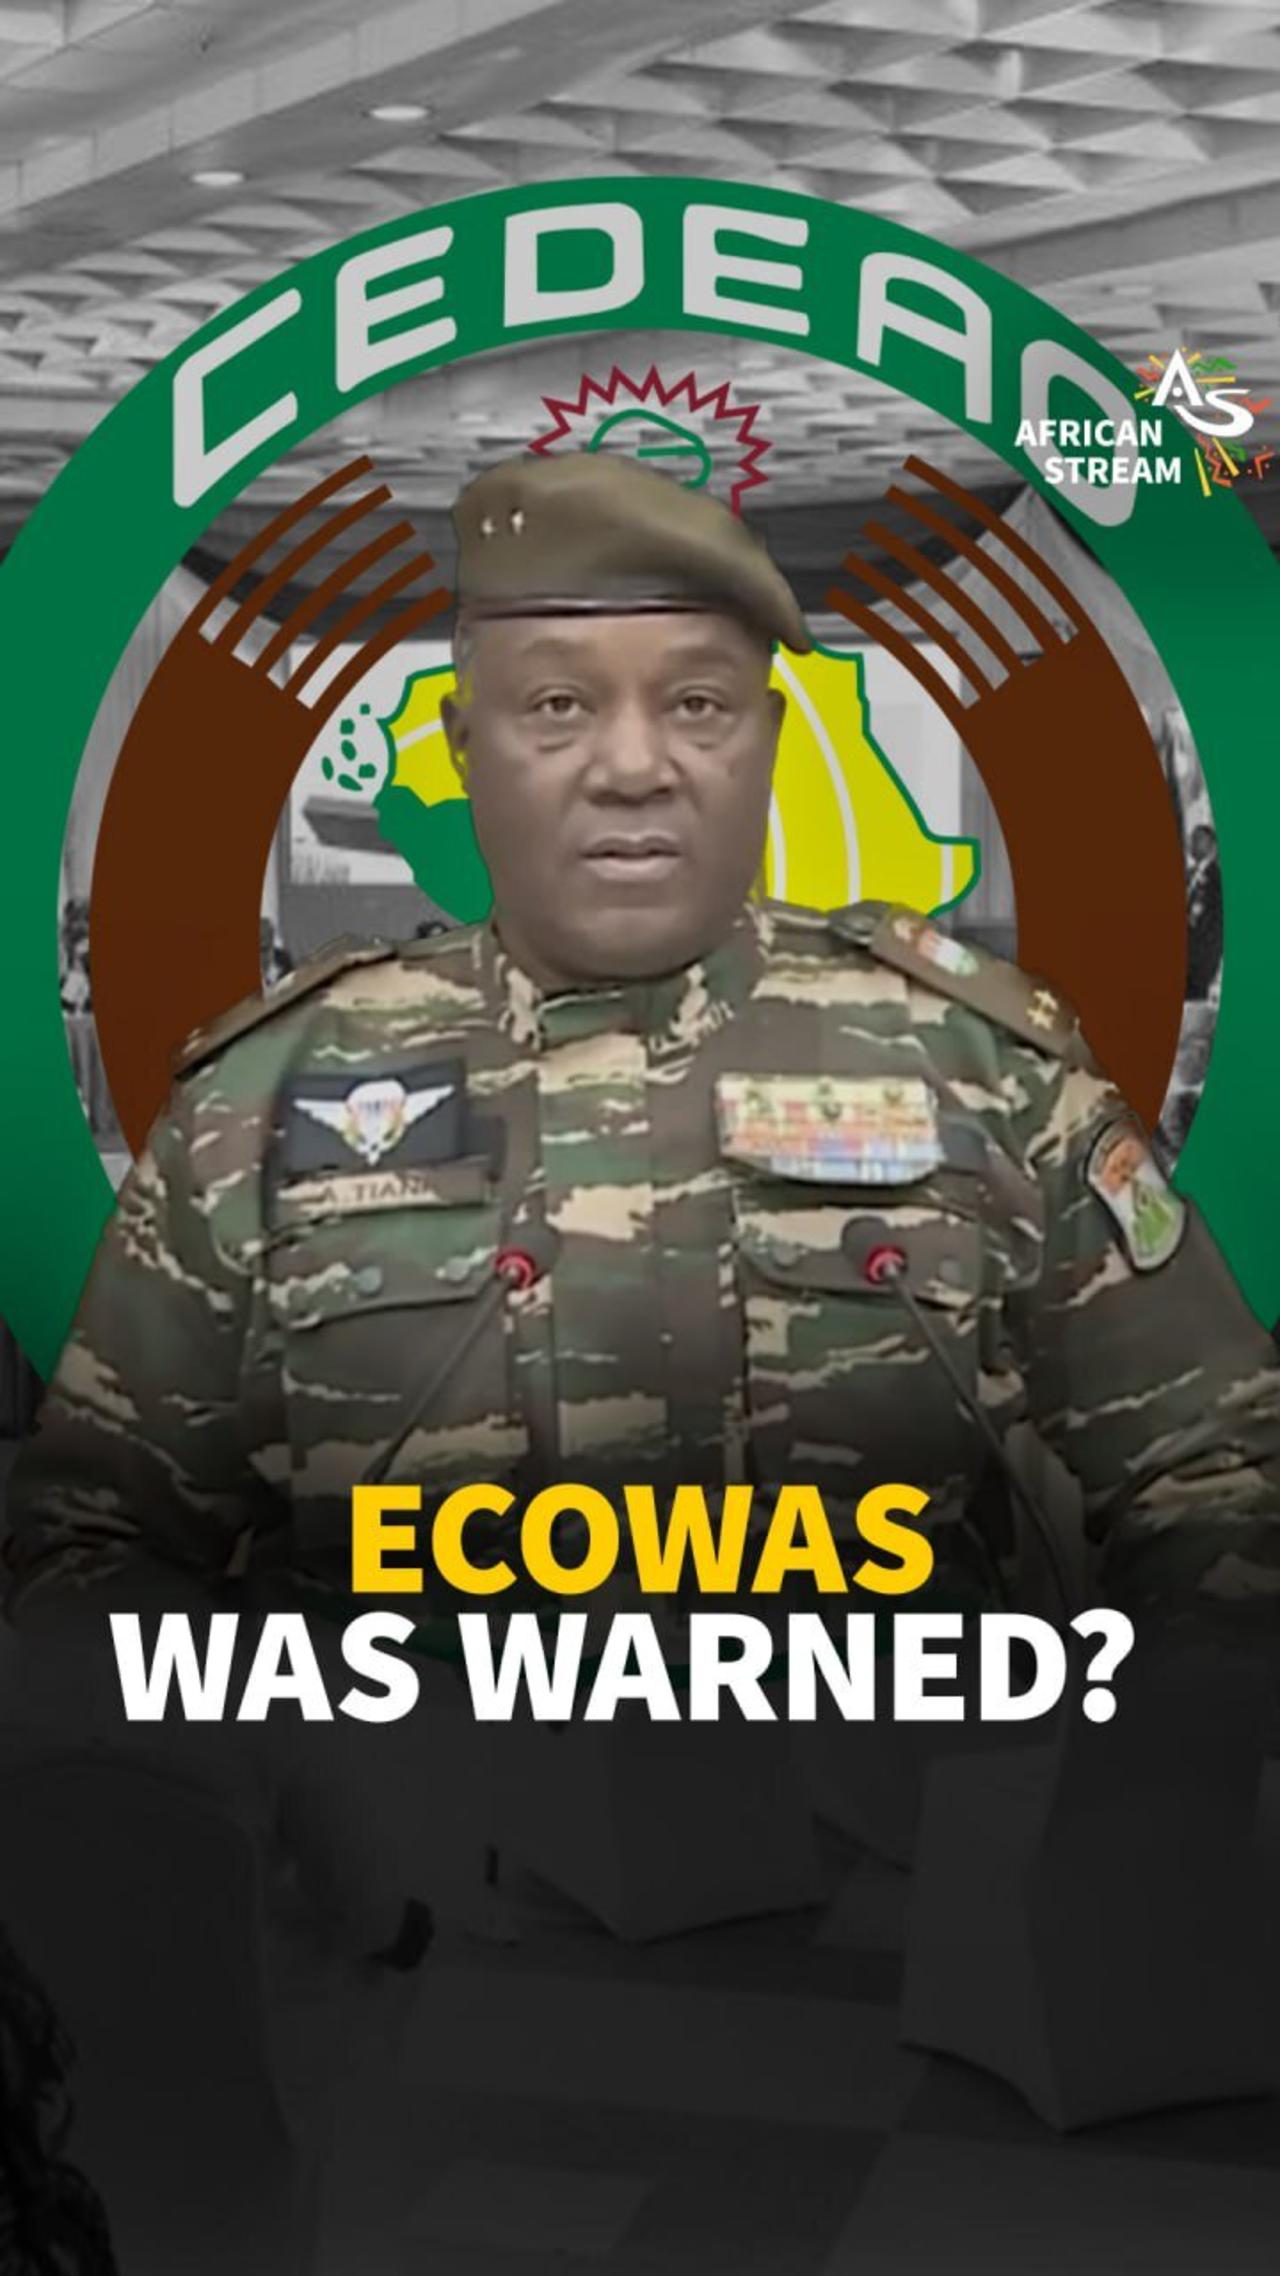 ECOWAS WAS WARNED?